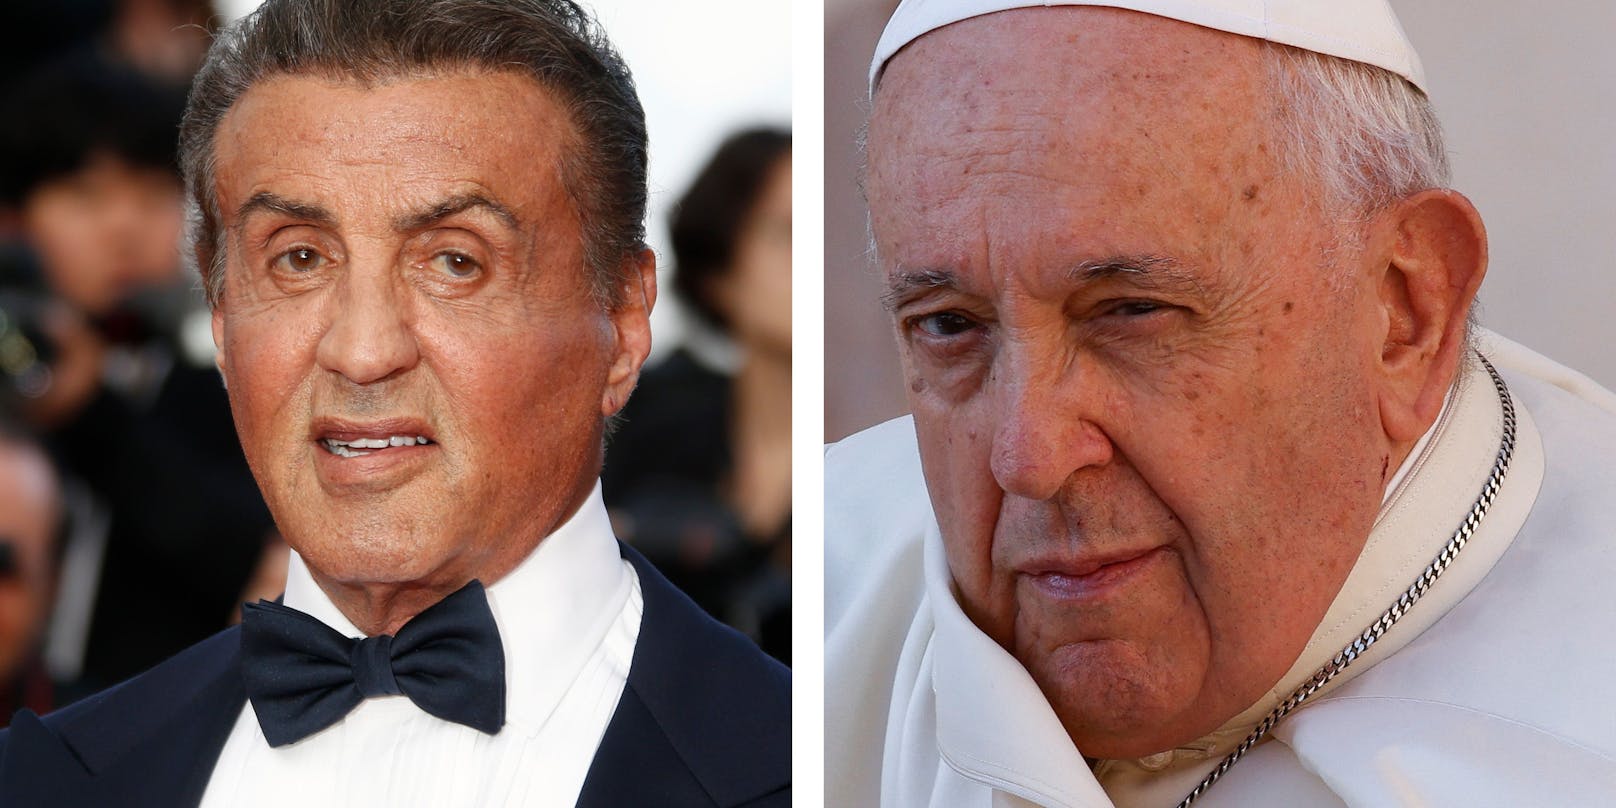 Beim Treffen mit dem Papst konnte sich Stallone eine Frage nicht verkneifen.